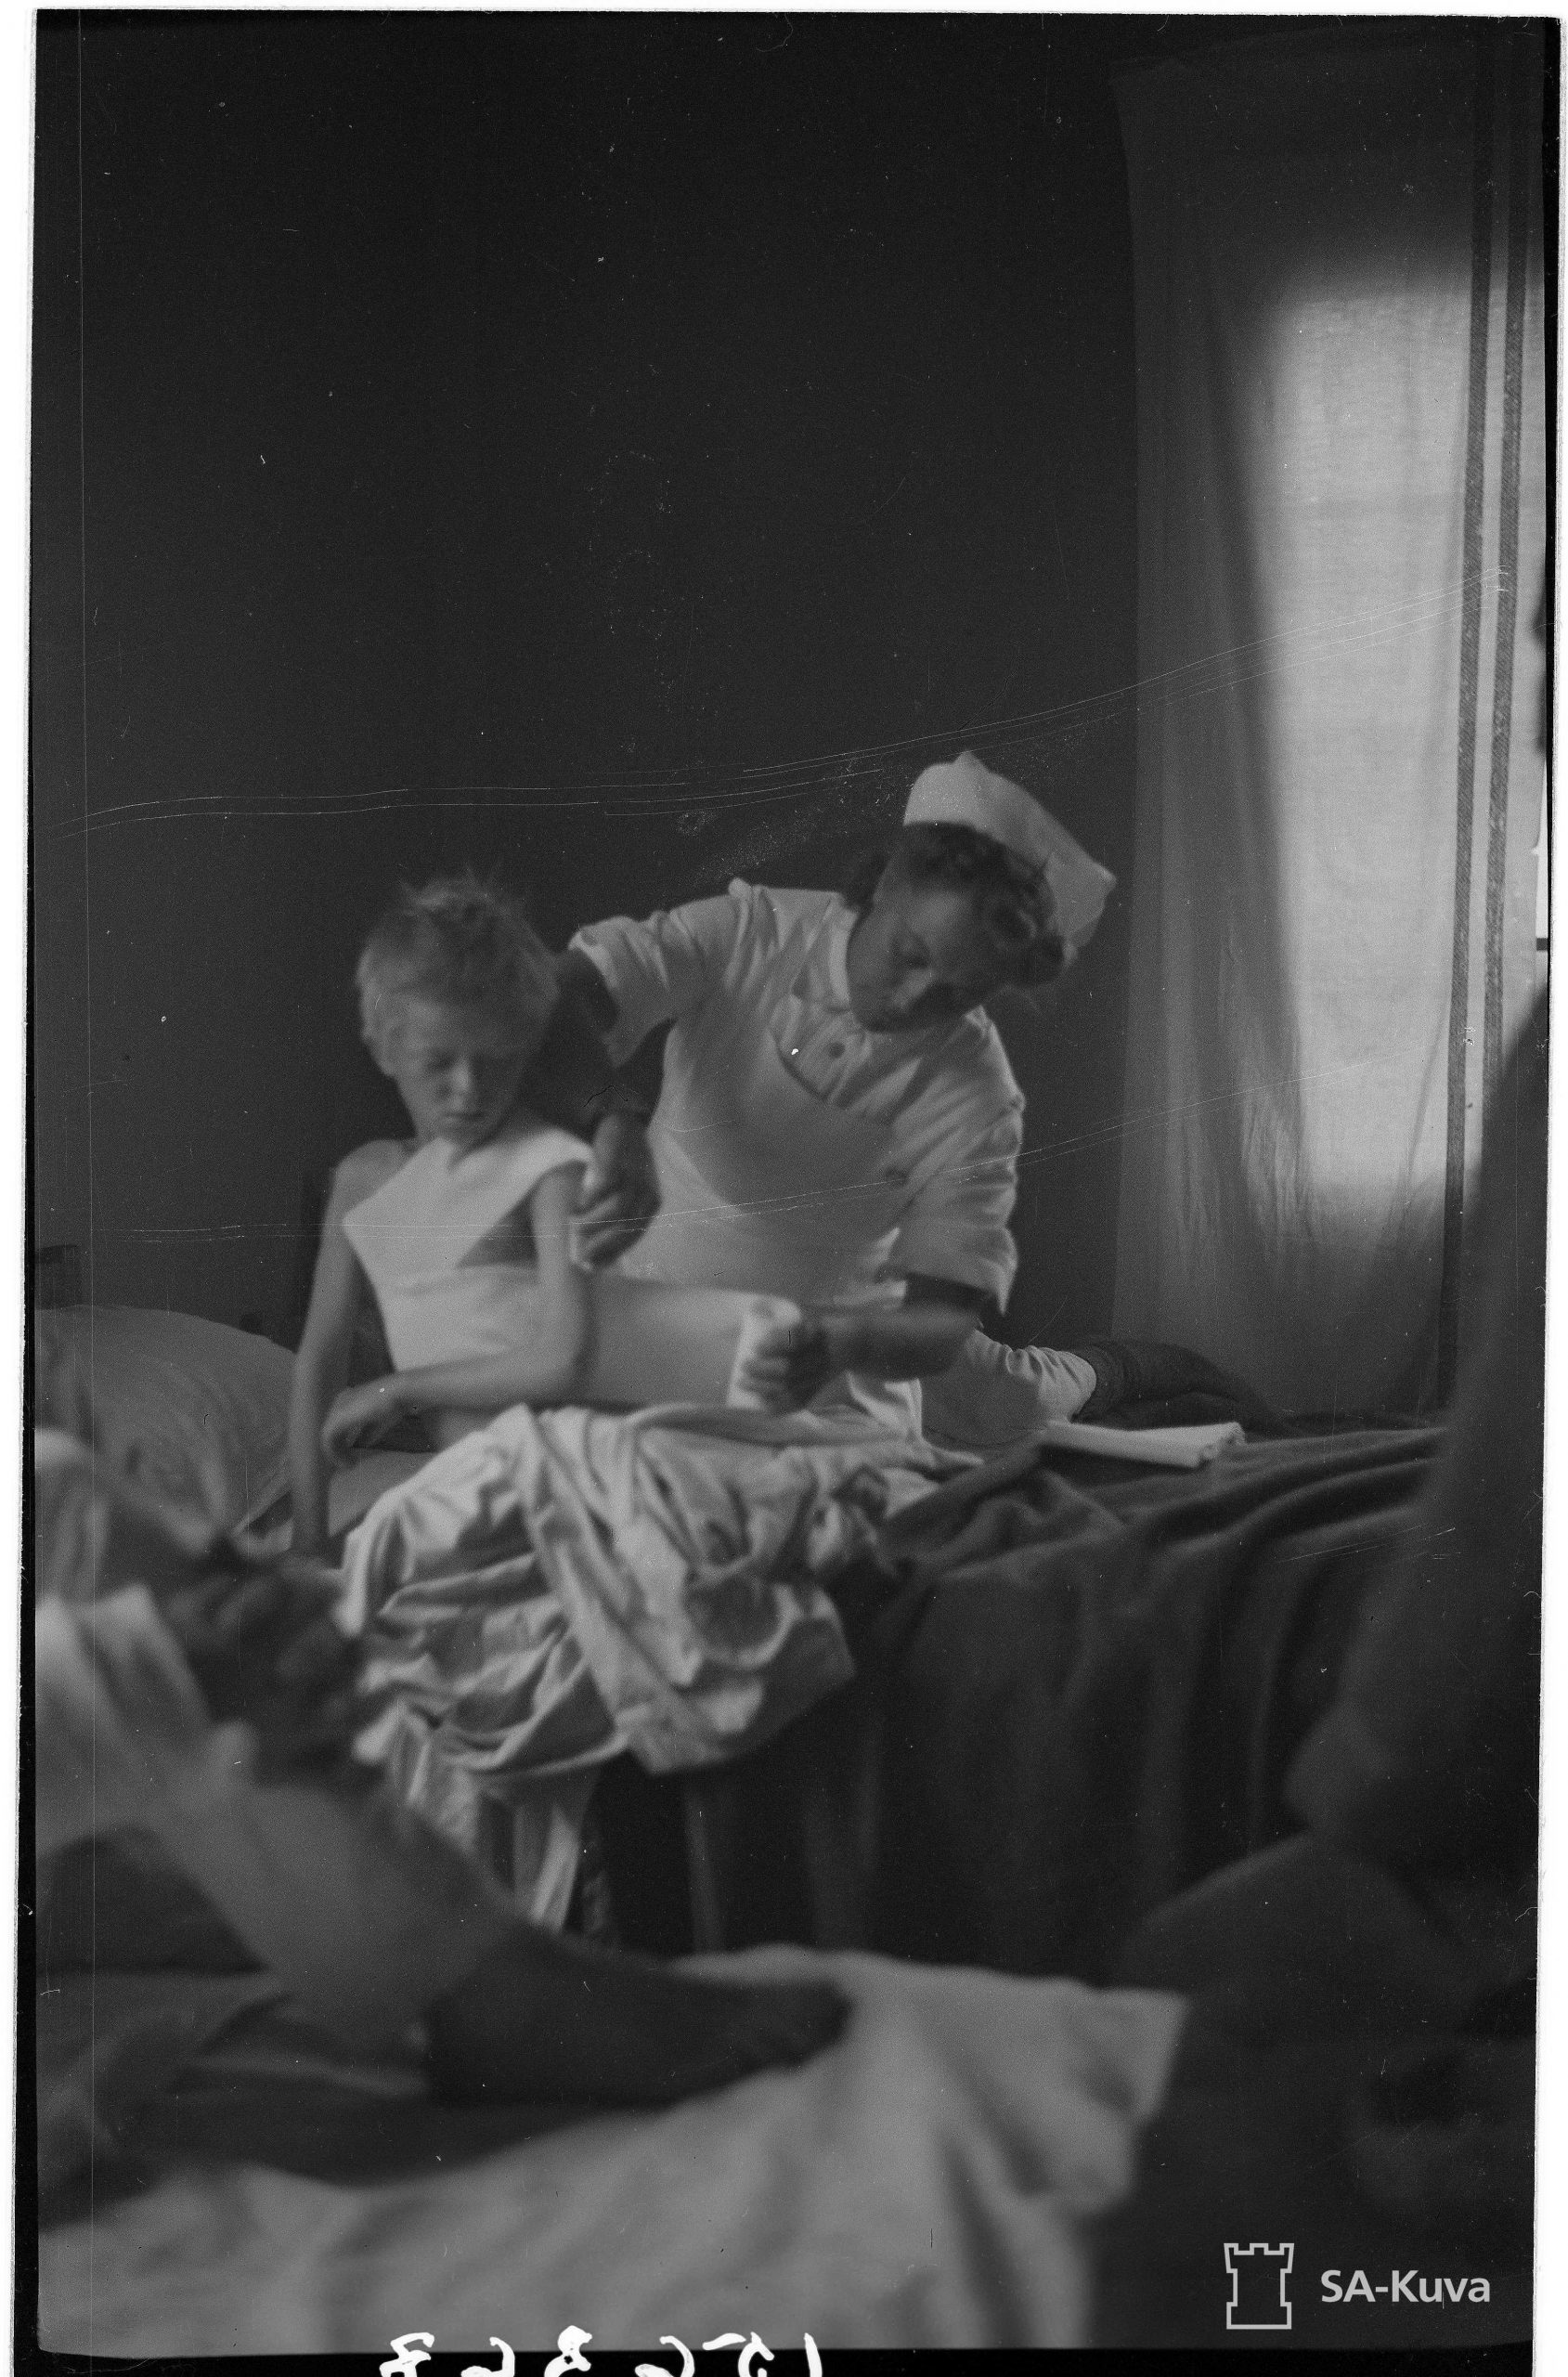 11-vuotias poika hoidettavana Lieksan sotasairaalassa vuonna 1944.